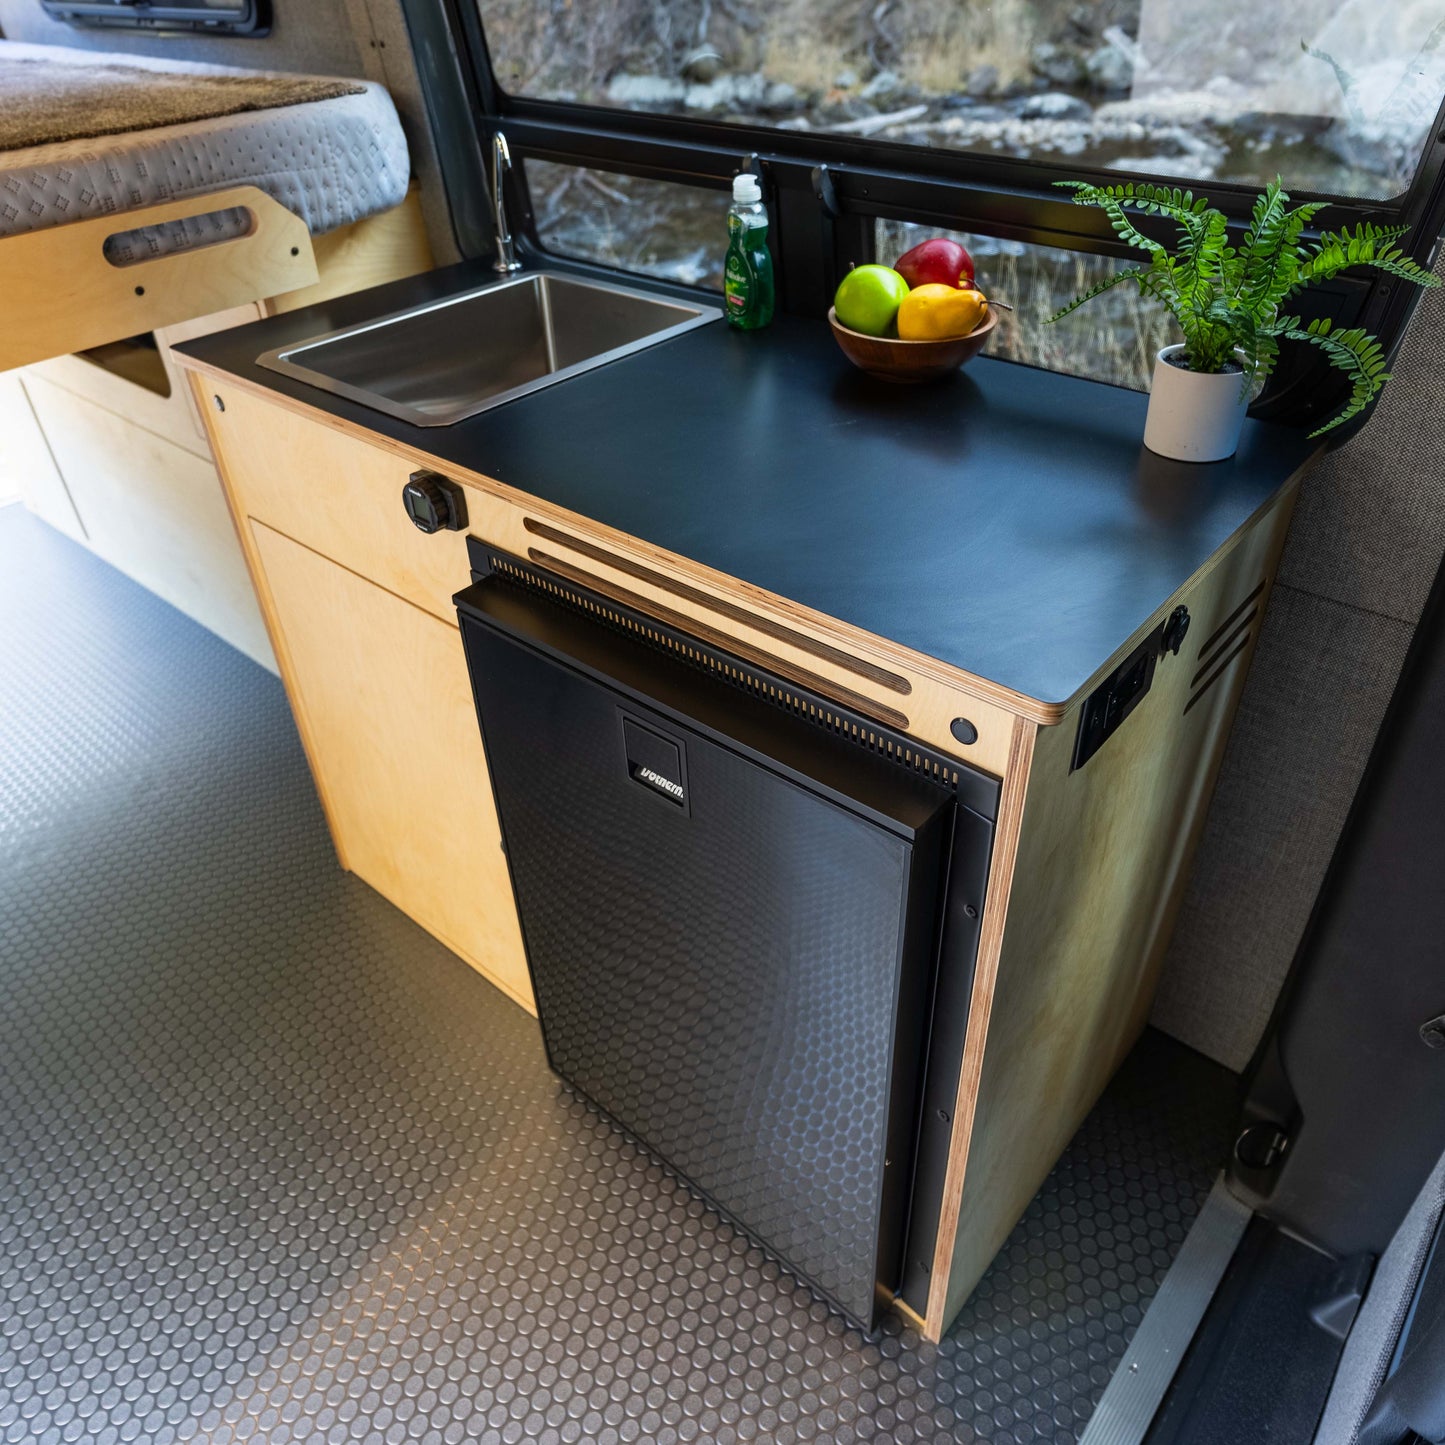 DIY Kitchen Galley Kit for Sprinter Vans